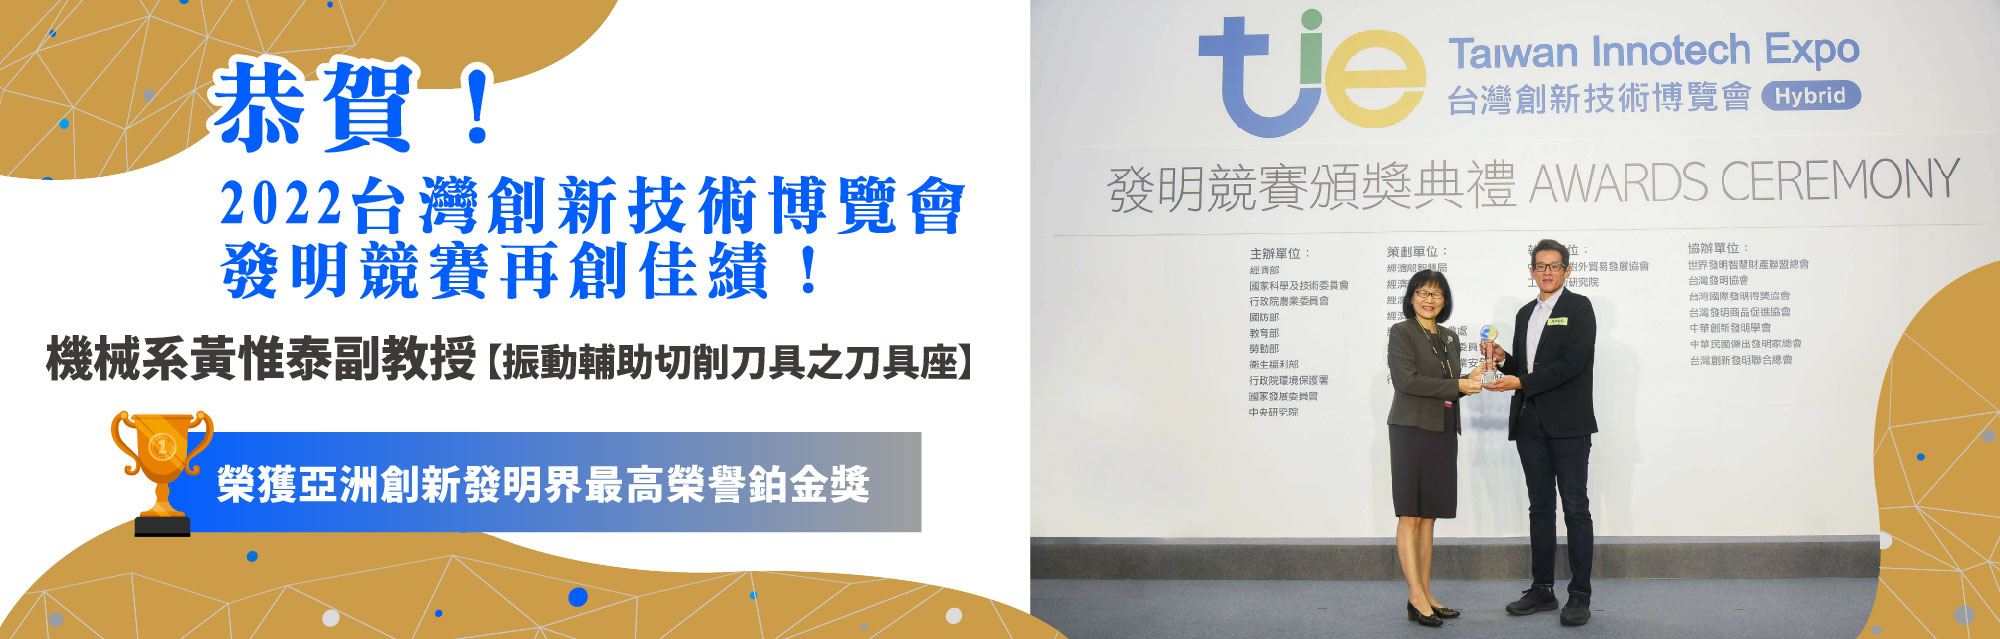 2022台灣創新技術博覽會獲獎橫幅